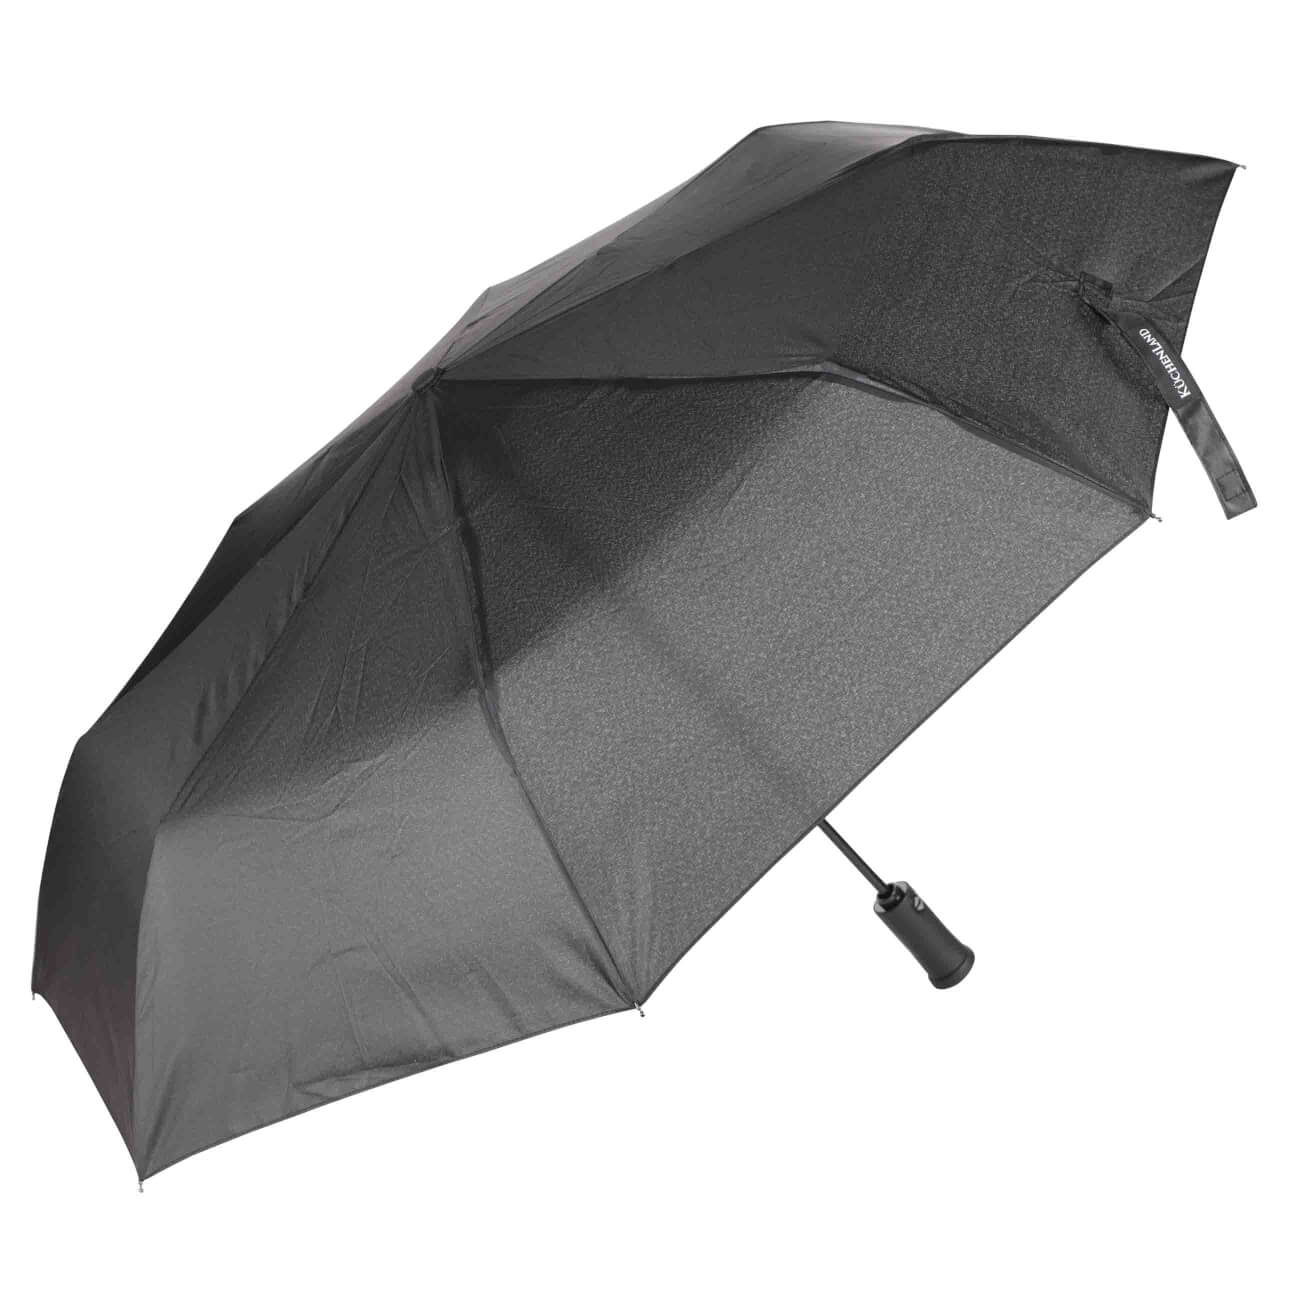 Зонт, 59 см, складной, автоматический, с фонариком, эпонж, черный, Ray light автоматический обратный складной зонт светодиодный фонарик десятикостный трехстворчатый автоматический бизнес зонт